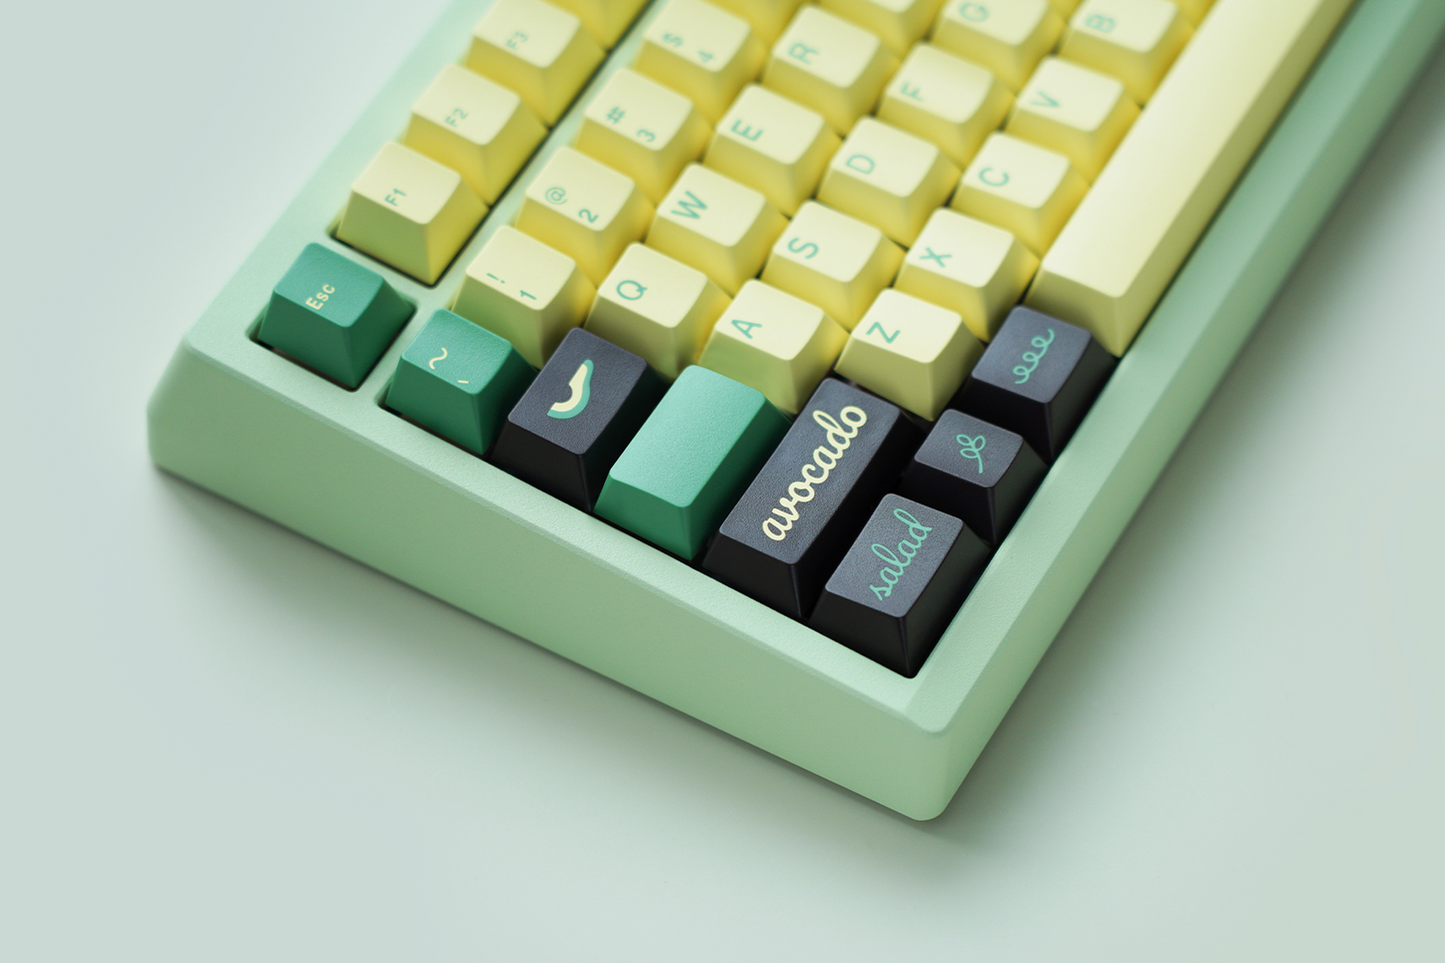 Meletrix Zoom75 Essential Edition (EE) - Barebones Keyboard Kit - Milky Green [Batch 2]